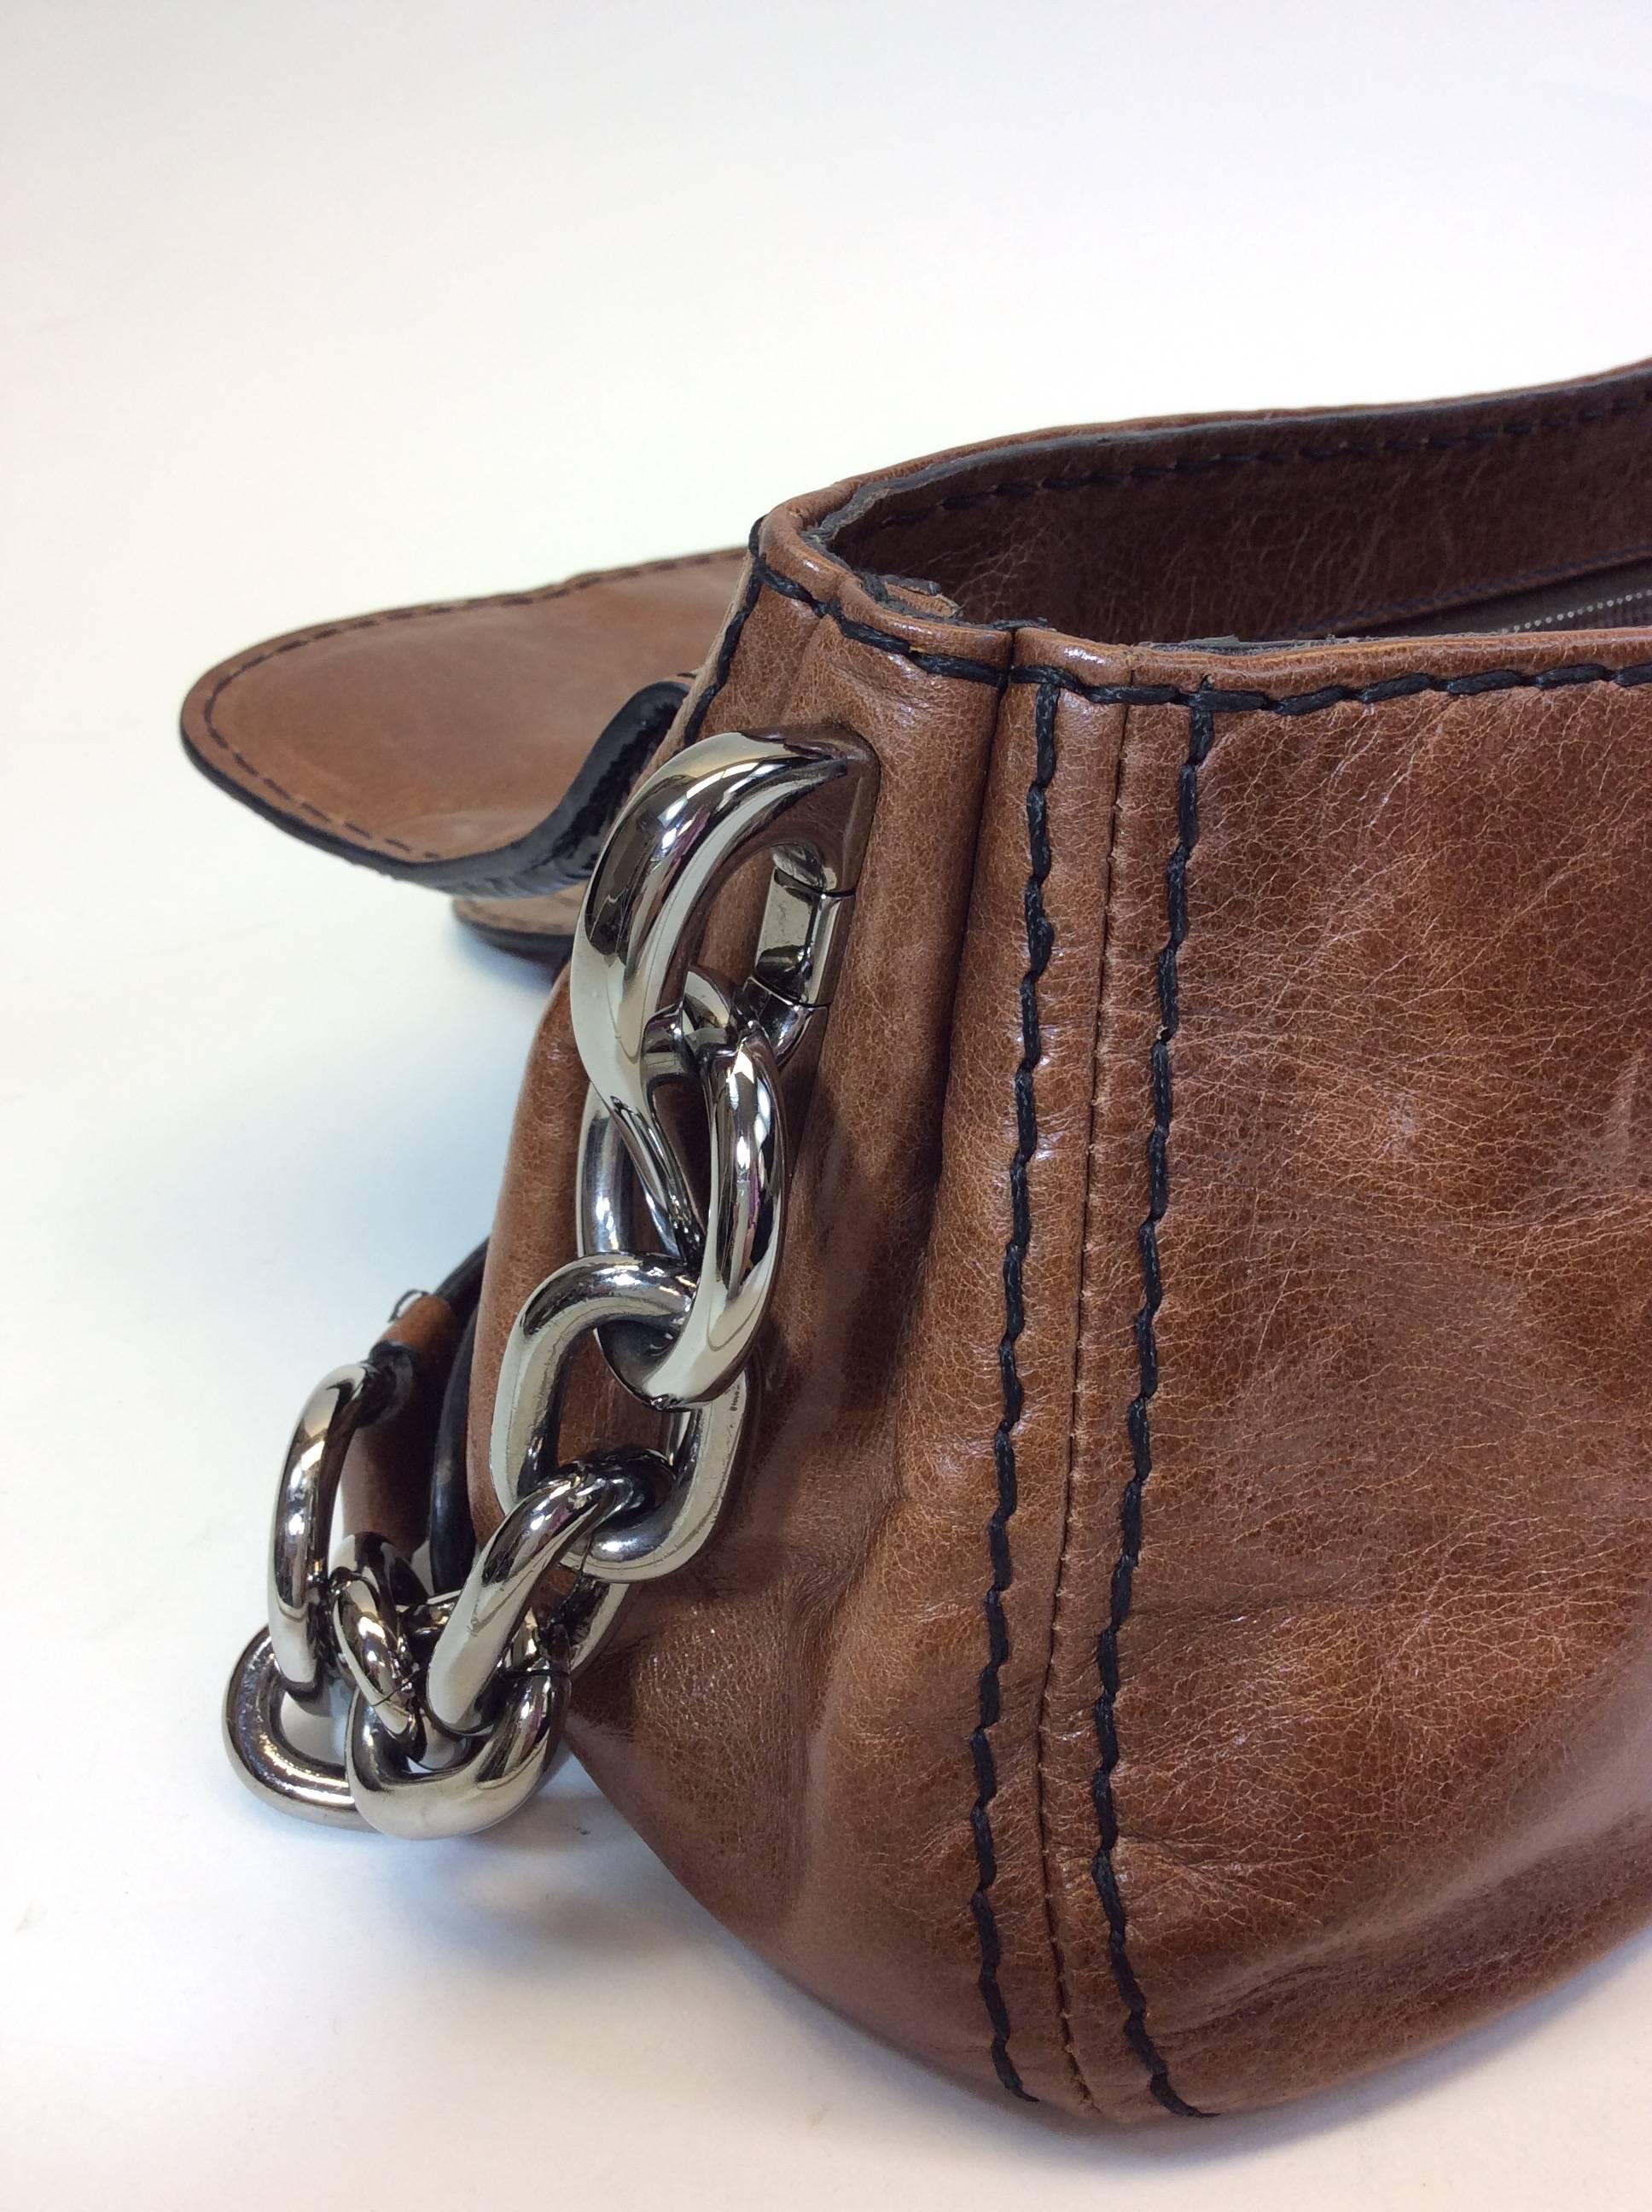 Prada Brown and Black Leather Handbag 1